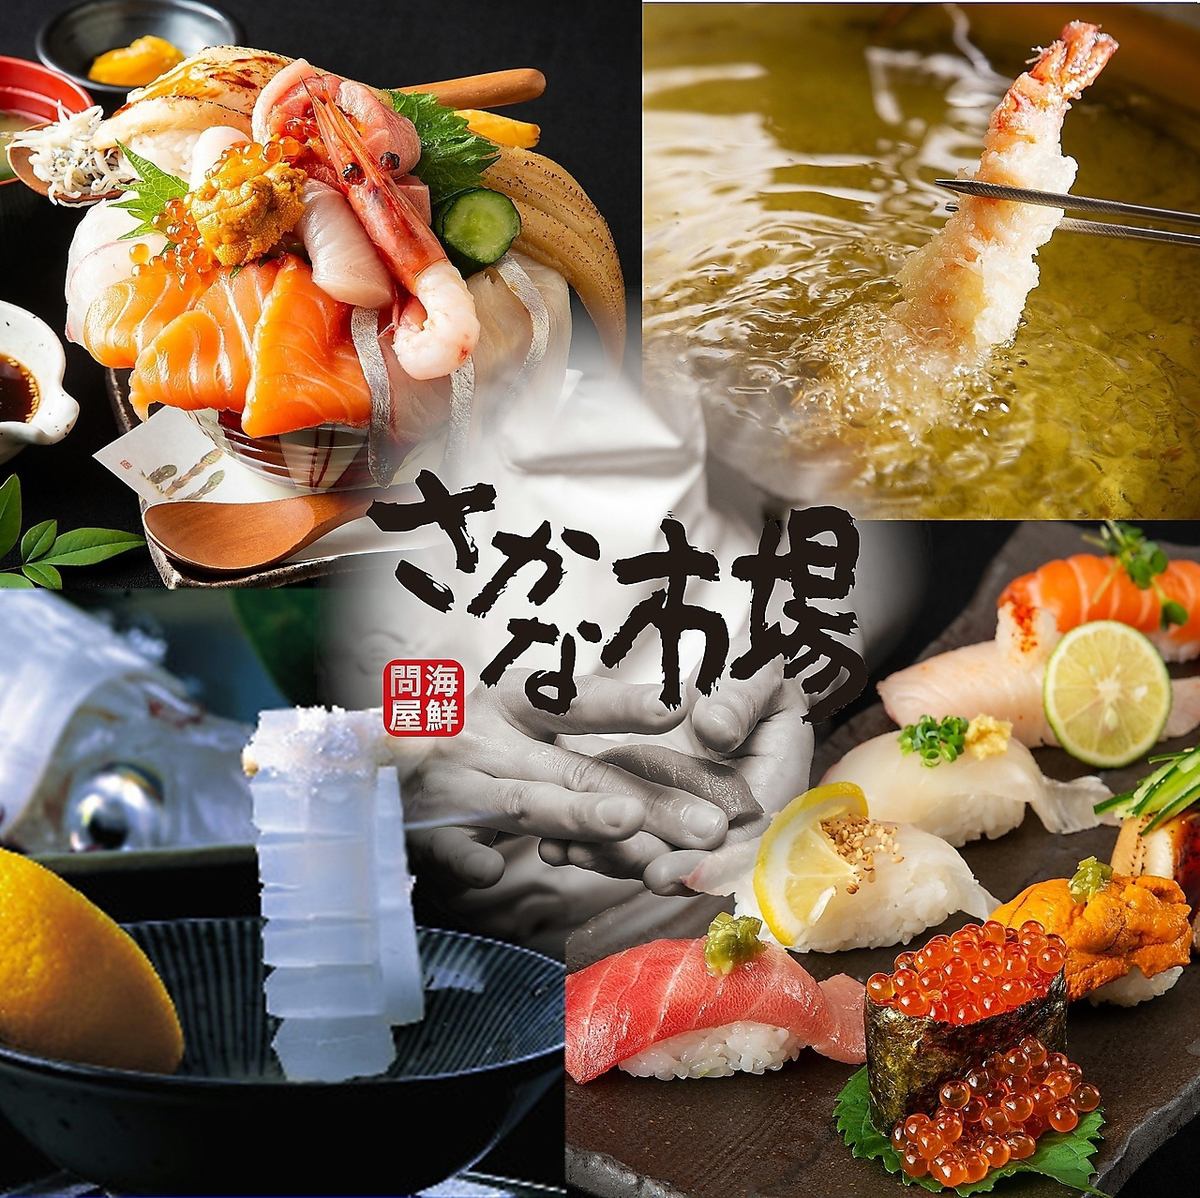 생선과의 궁합 ◎의 히로시마 지주・지방의 명주를 종류 풍부하게 준비!